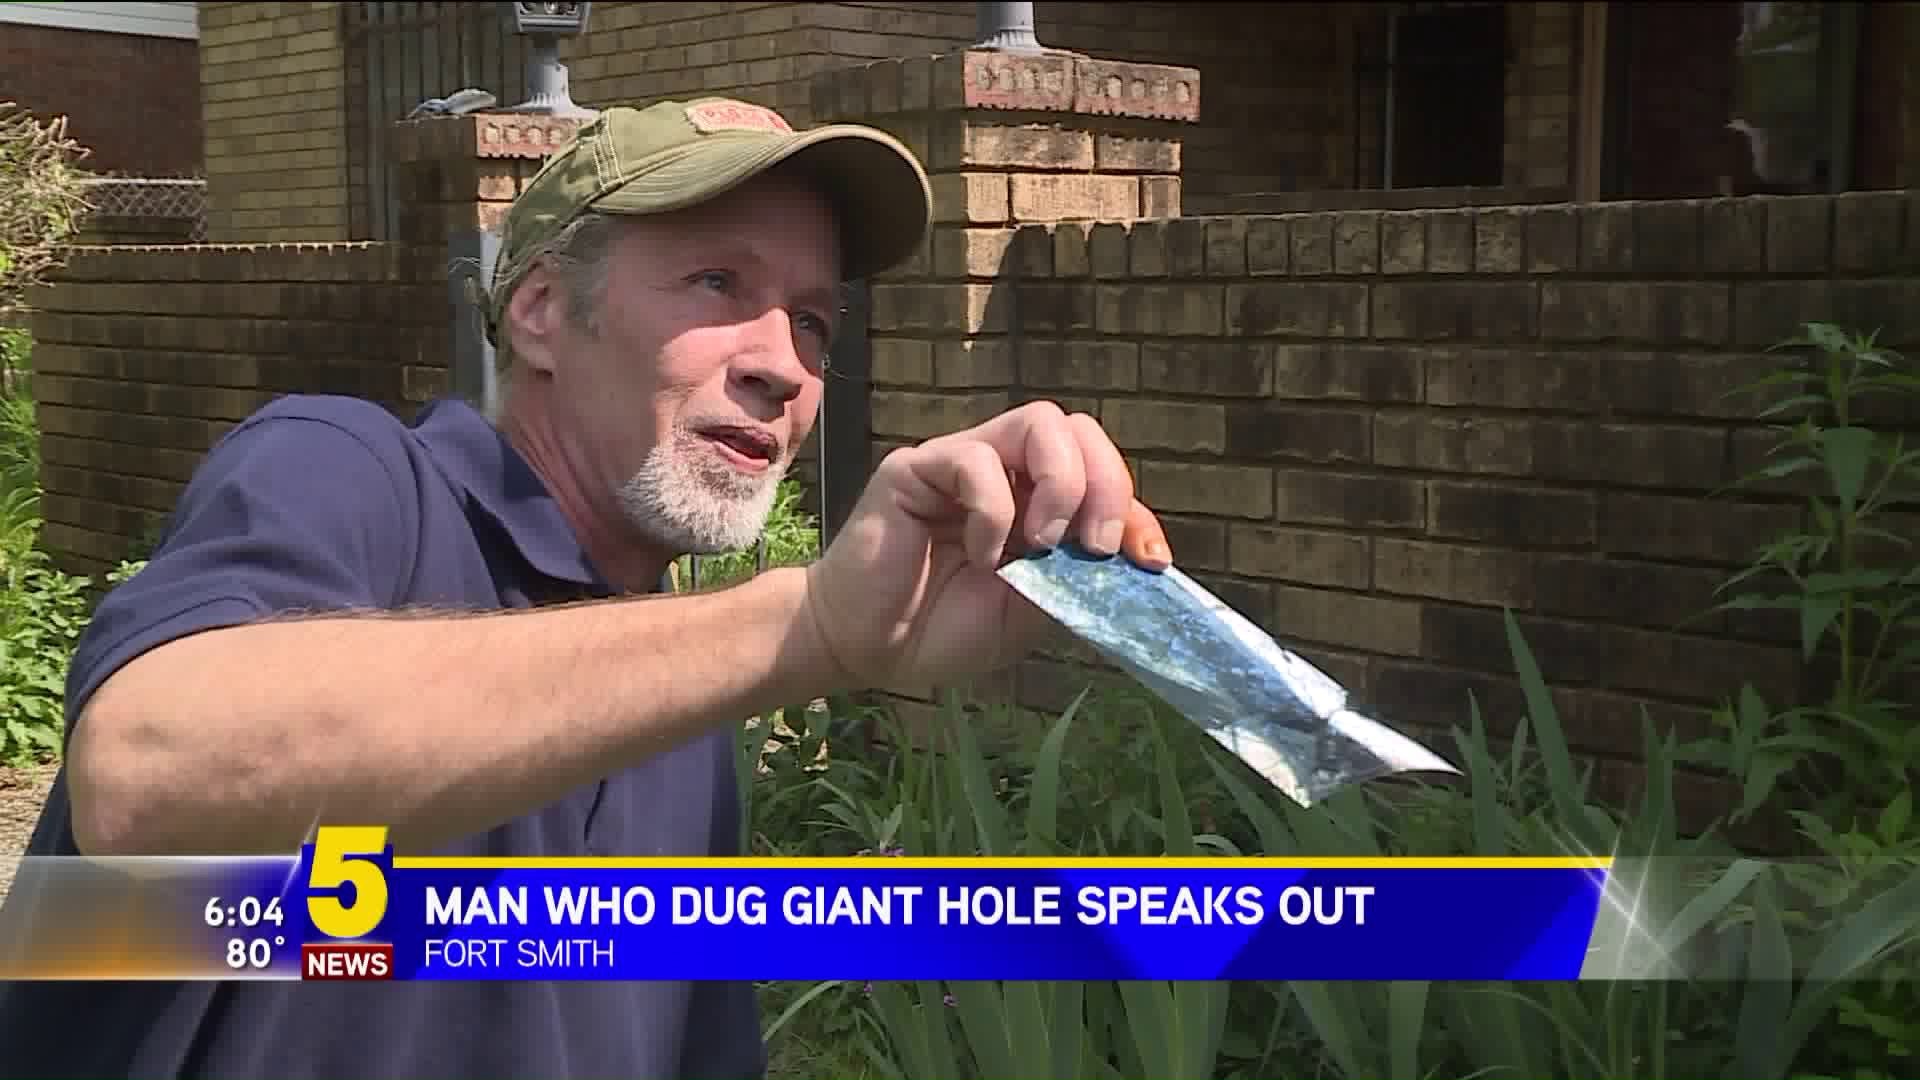 Man Who Dug Giant Hole Speaks Out